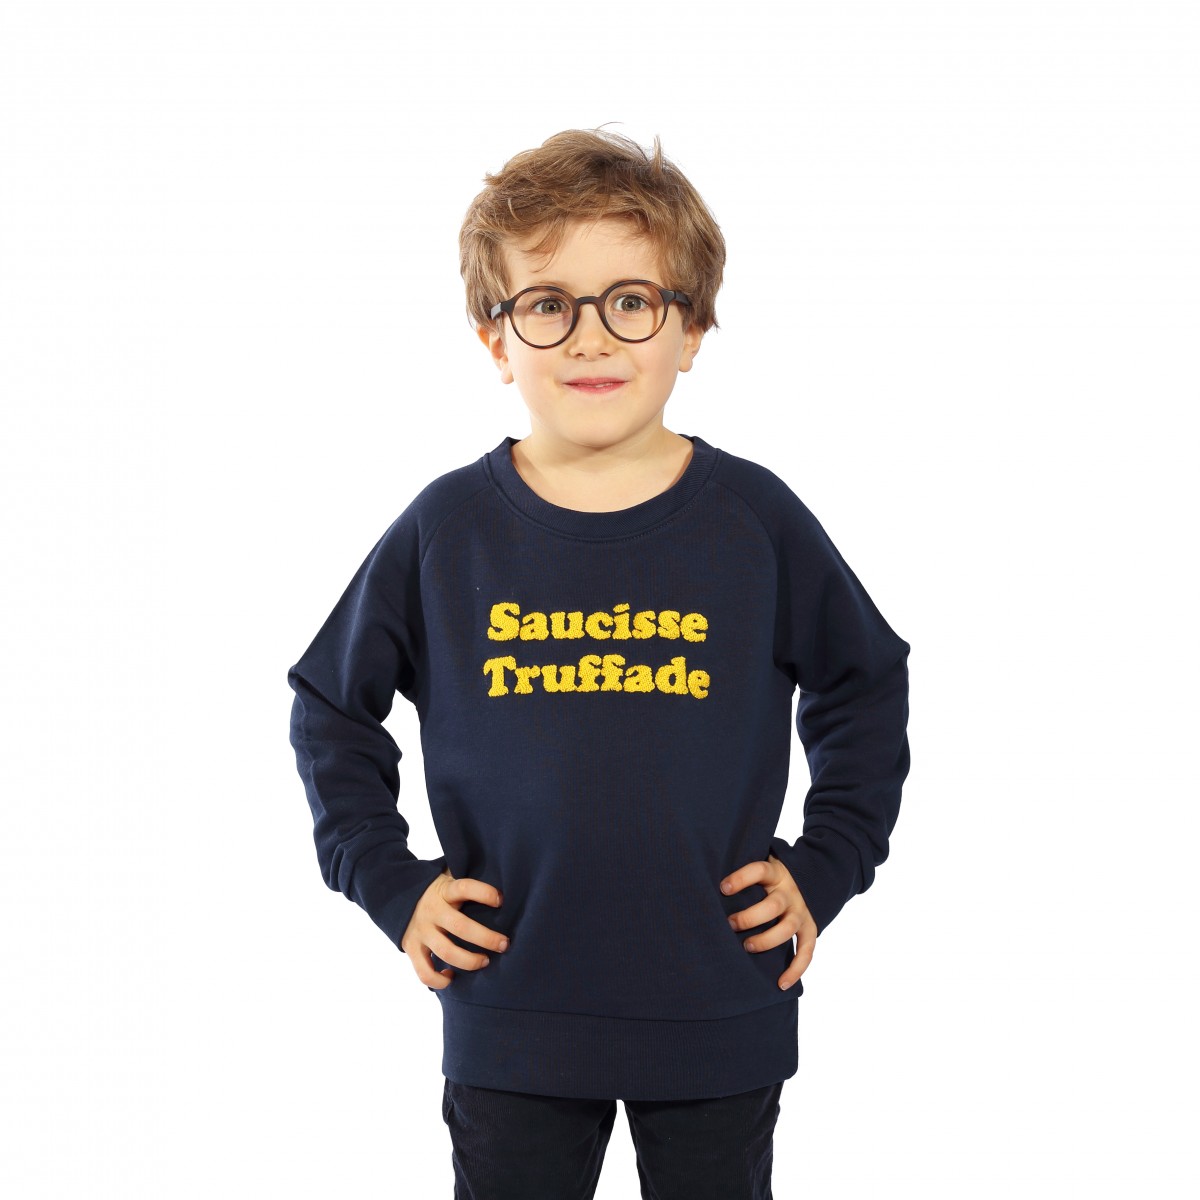 Saucisse Truffade - Sweat enfant marine avec broderie jaune